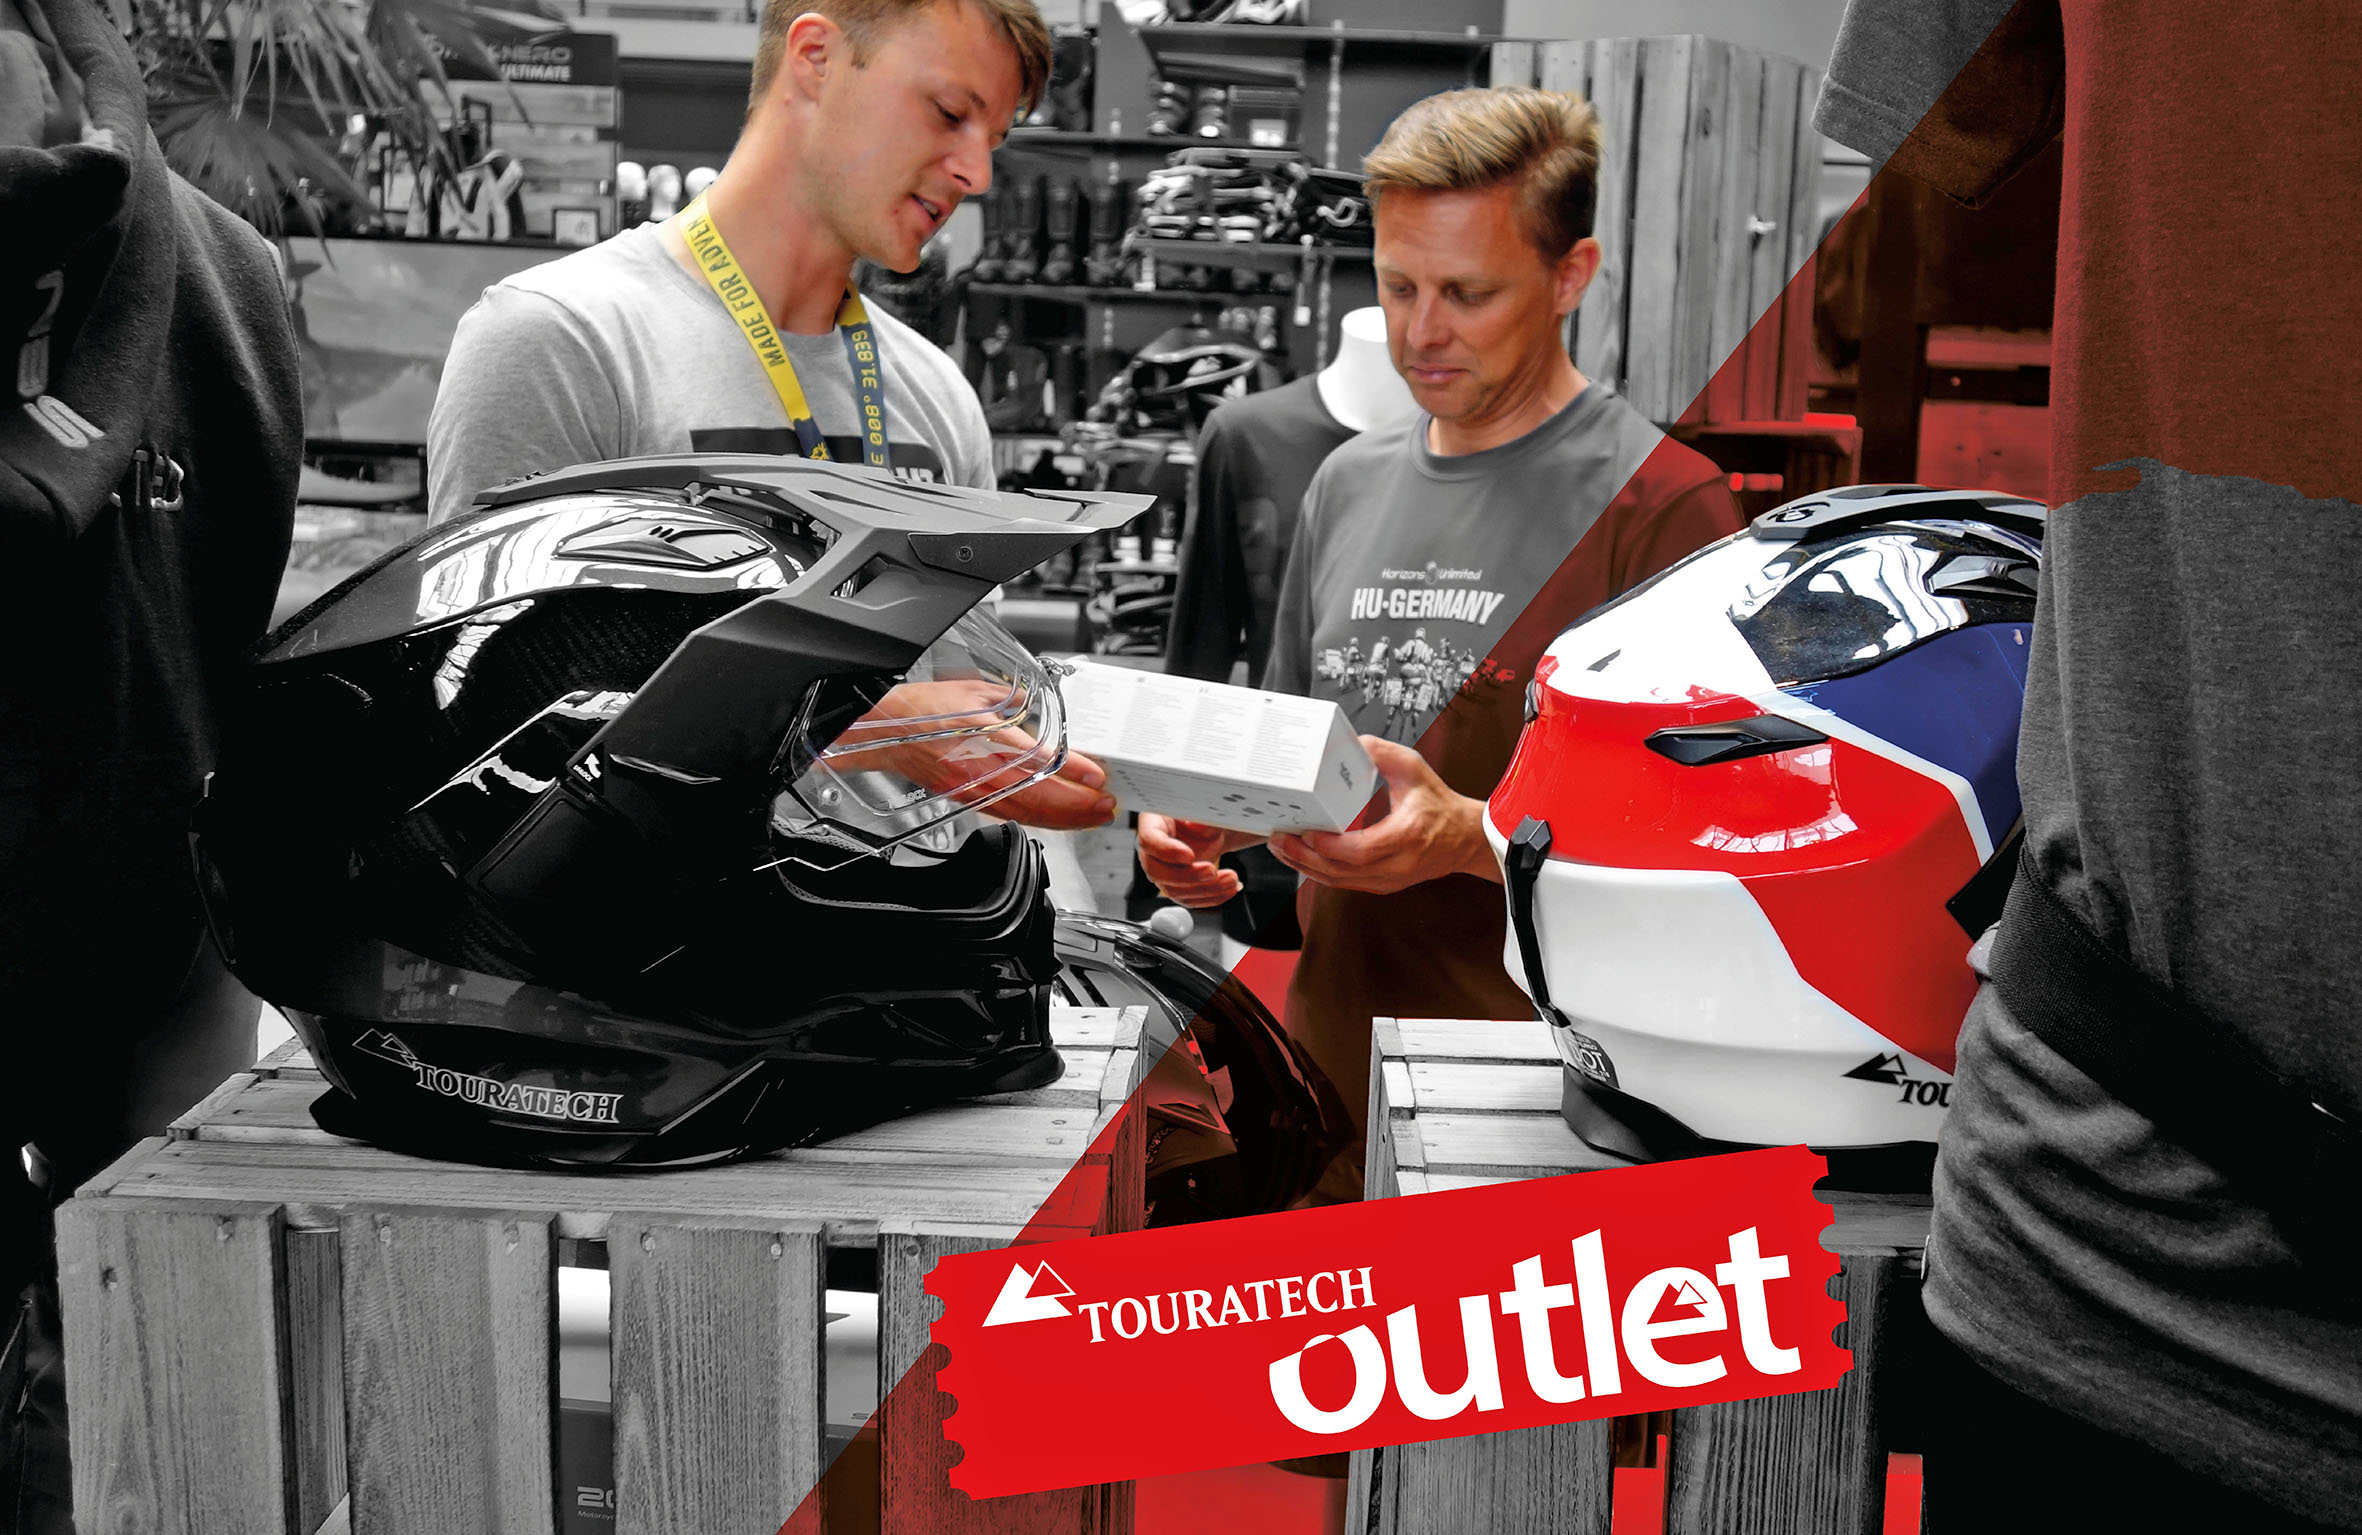 Touratech startet OUTLET-Verkauf